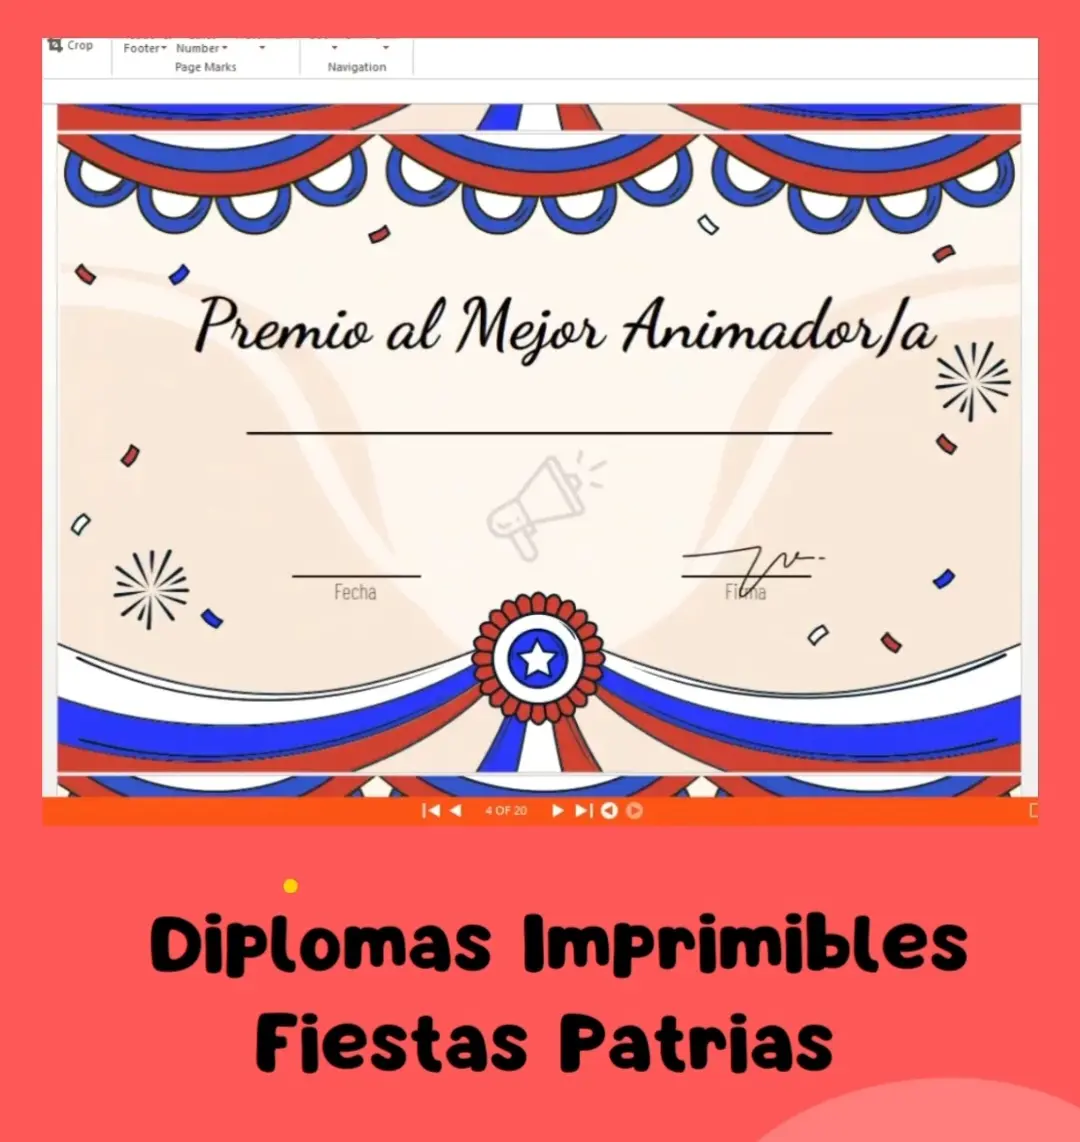 Diplomas Imprimibles Fiestas Patrias | Premios Familiares